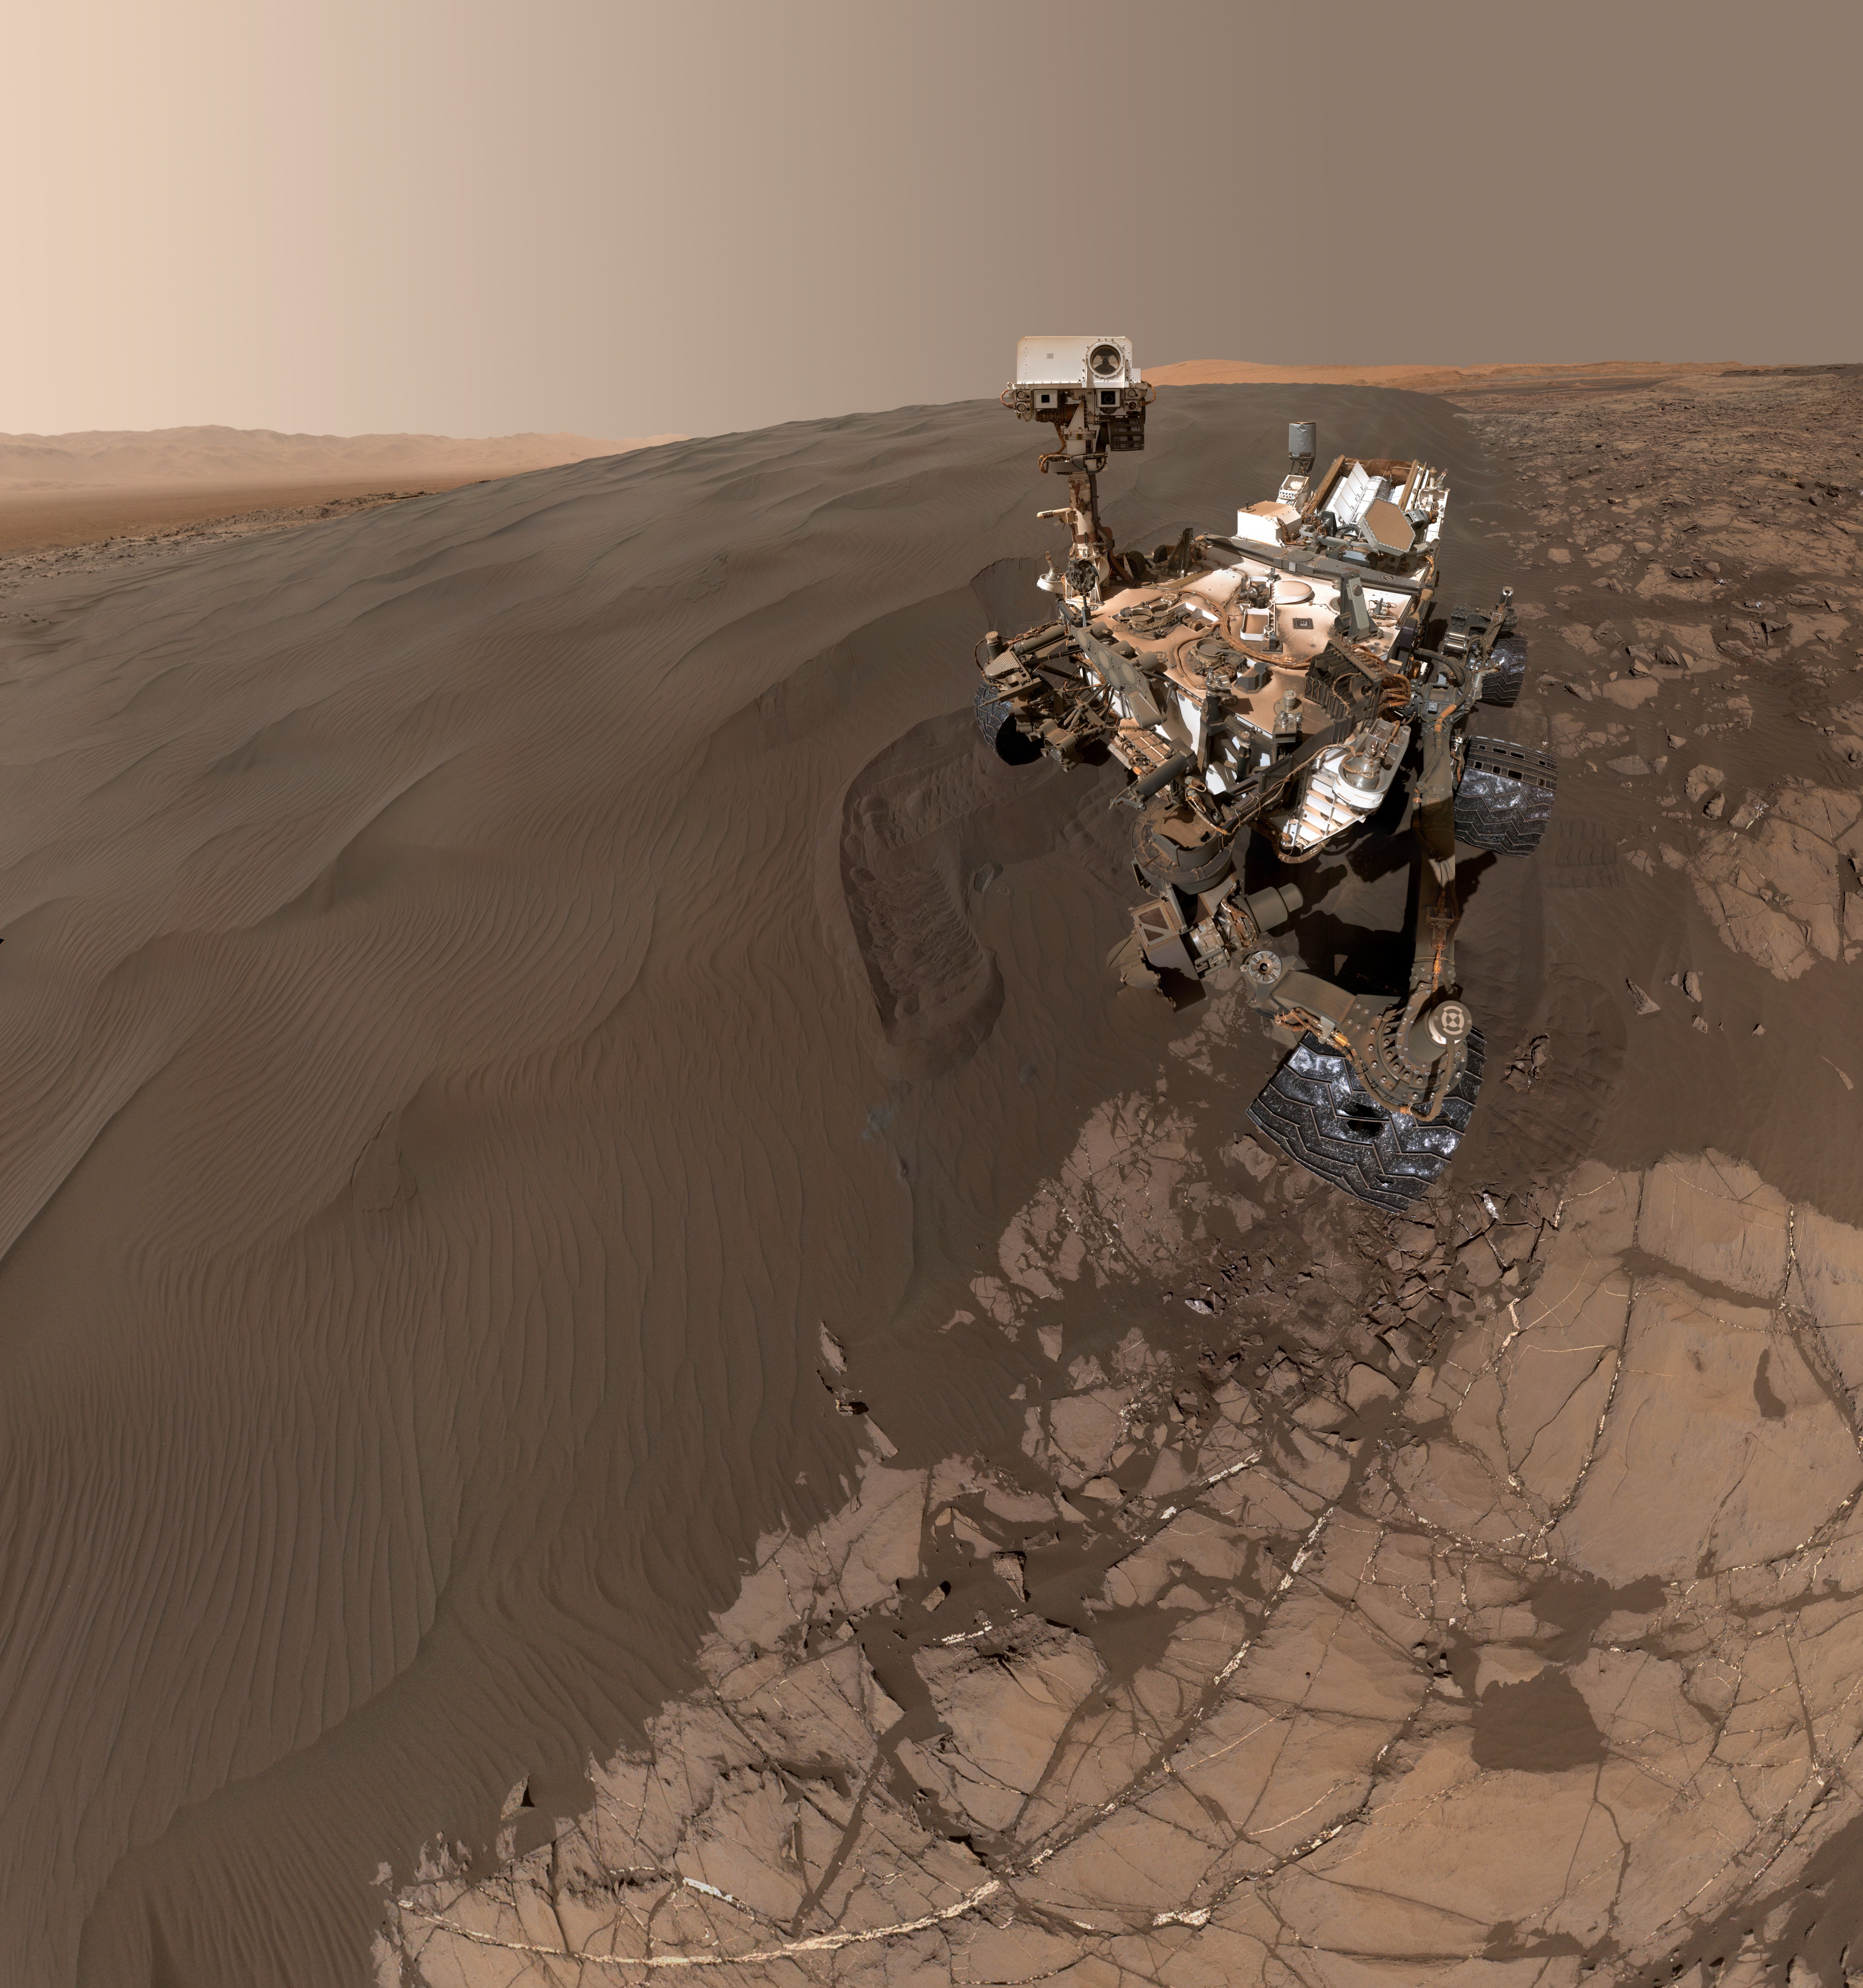 curiosity-mars-rover-self-portrait-martian-sand-dunes-pia20316-full r2